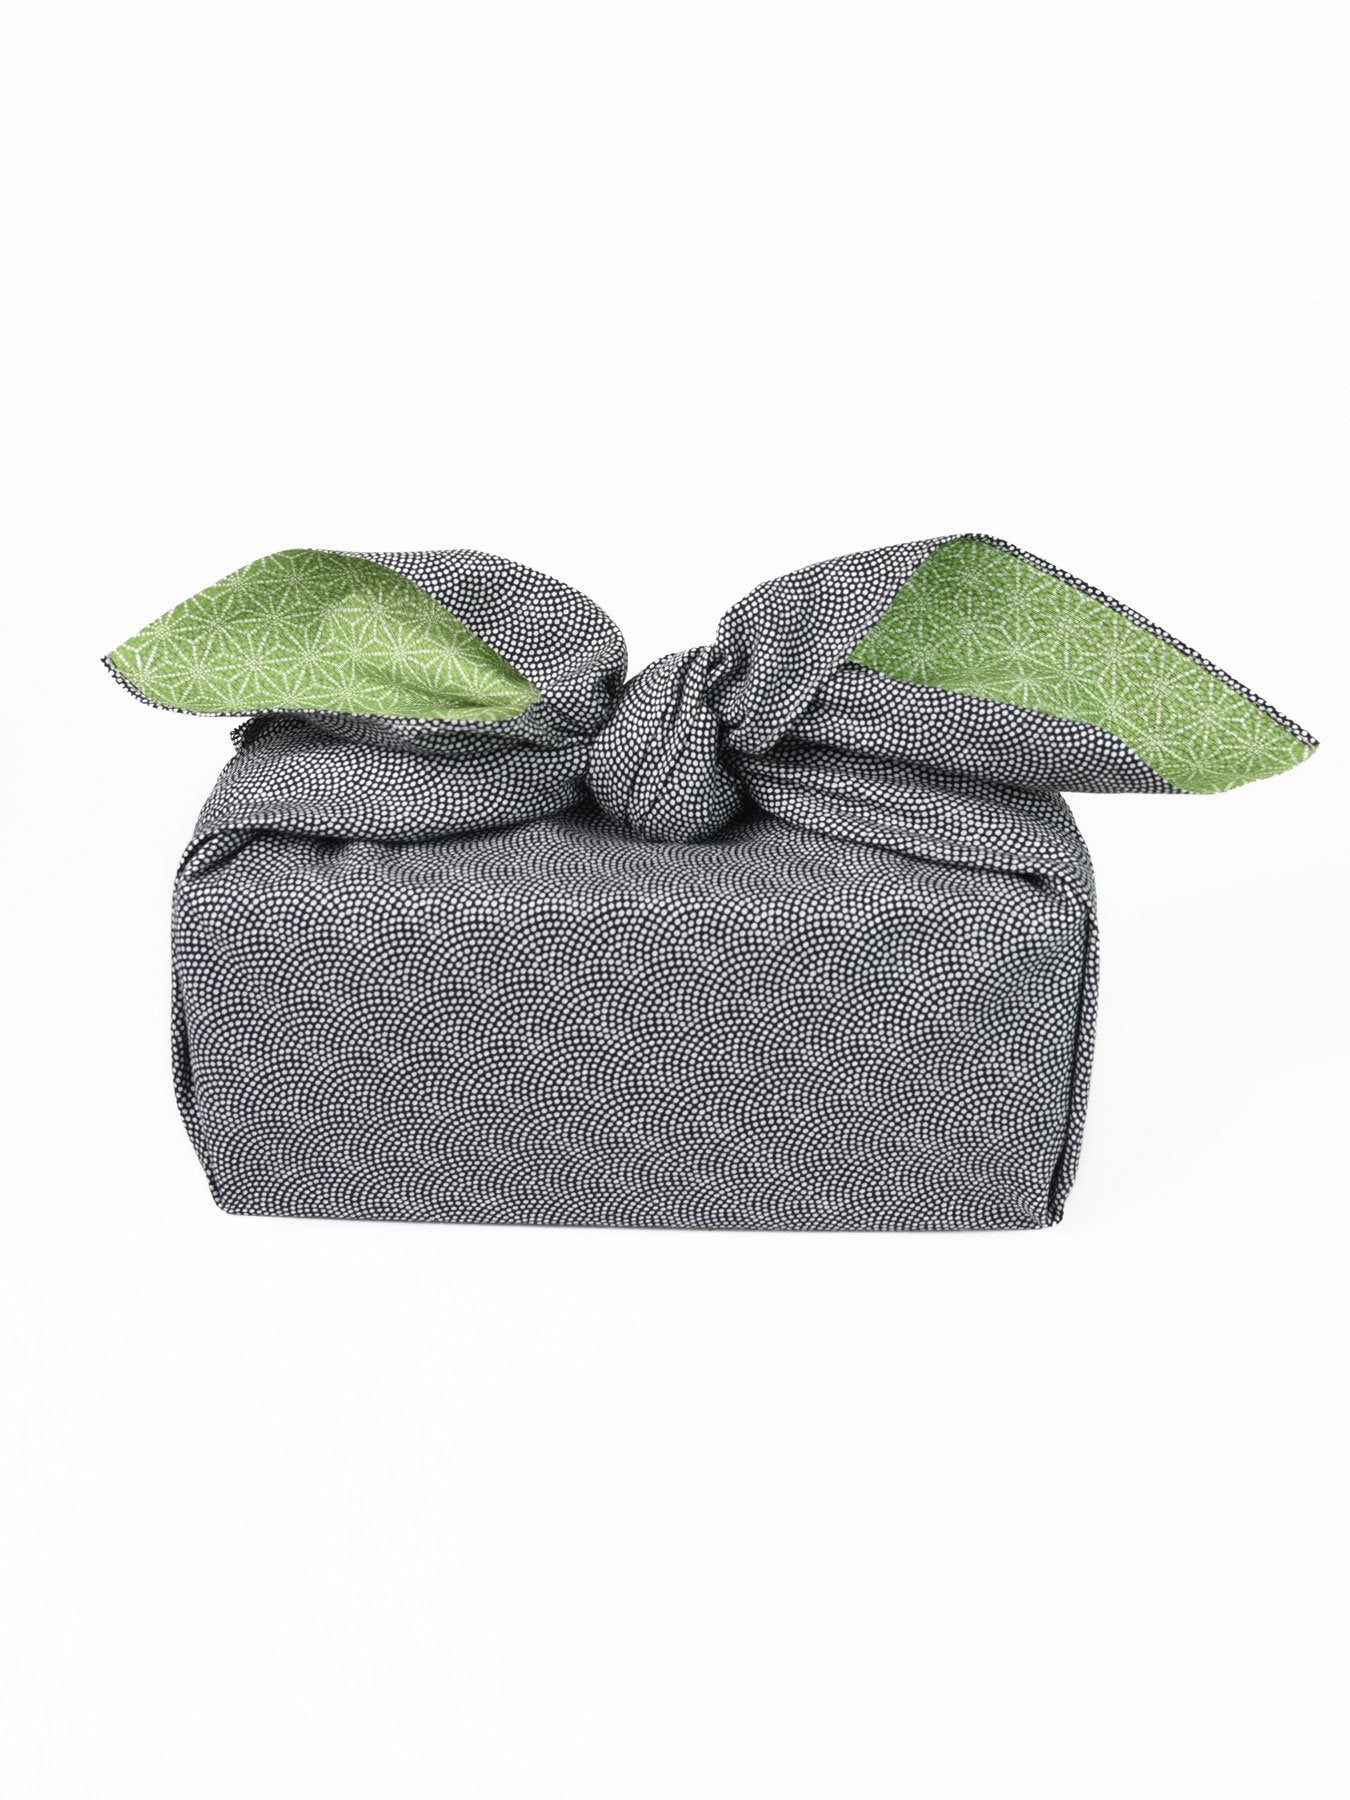 Black Samekomon Reversible Furoshiki Gift Wrapping